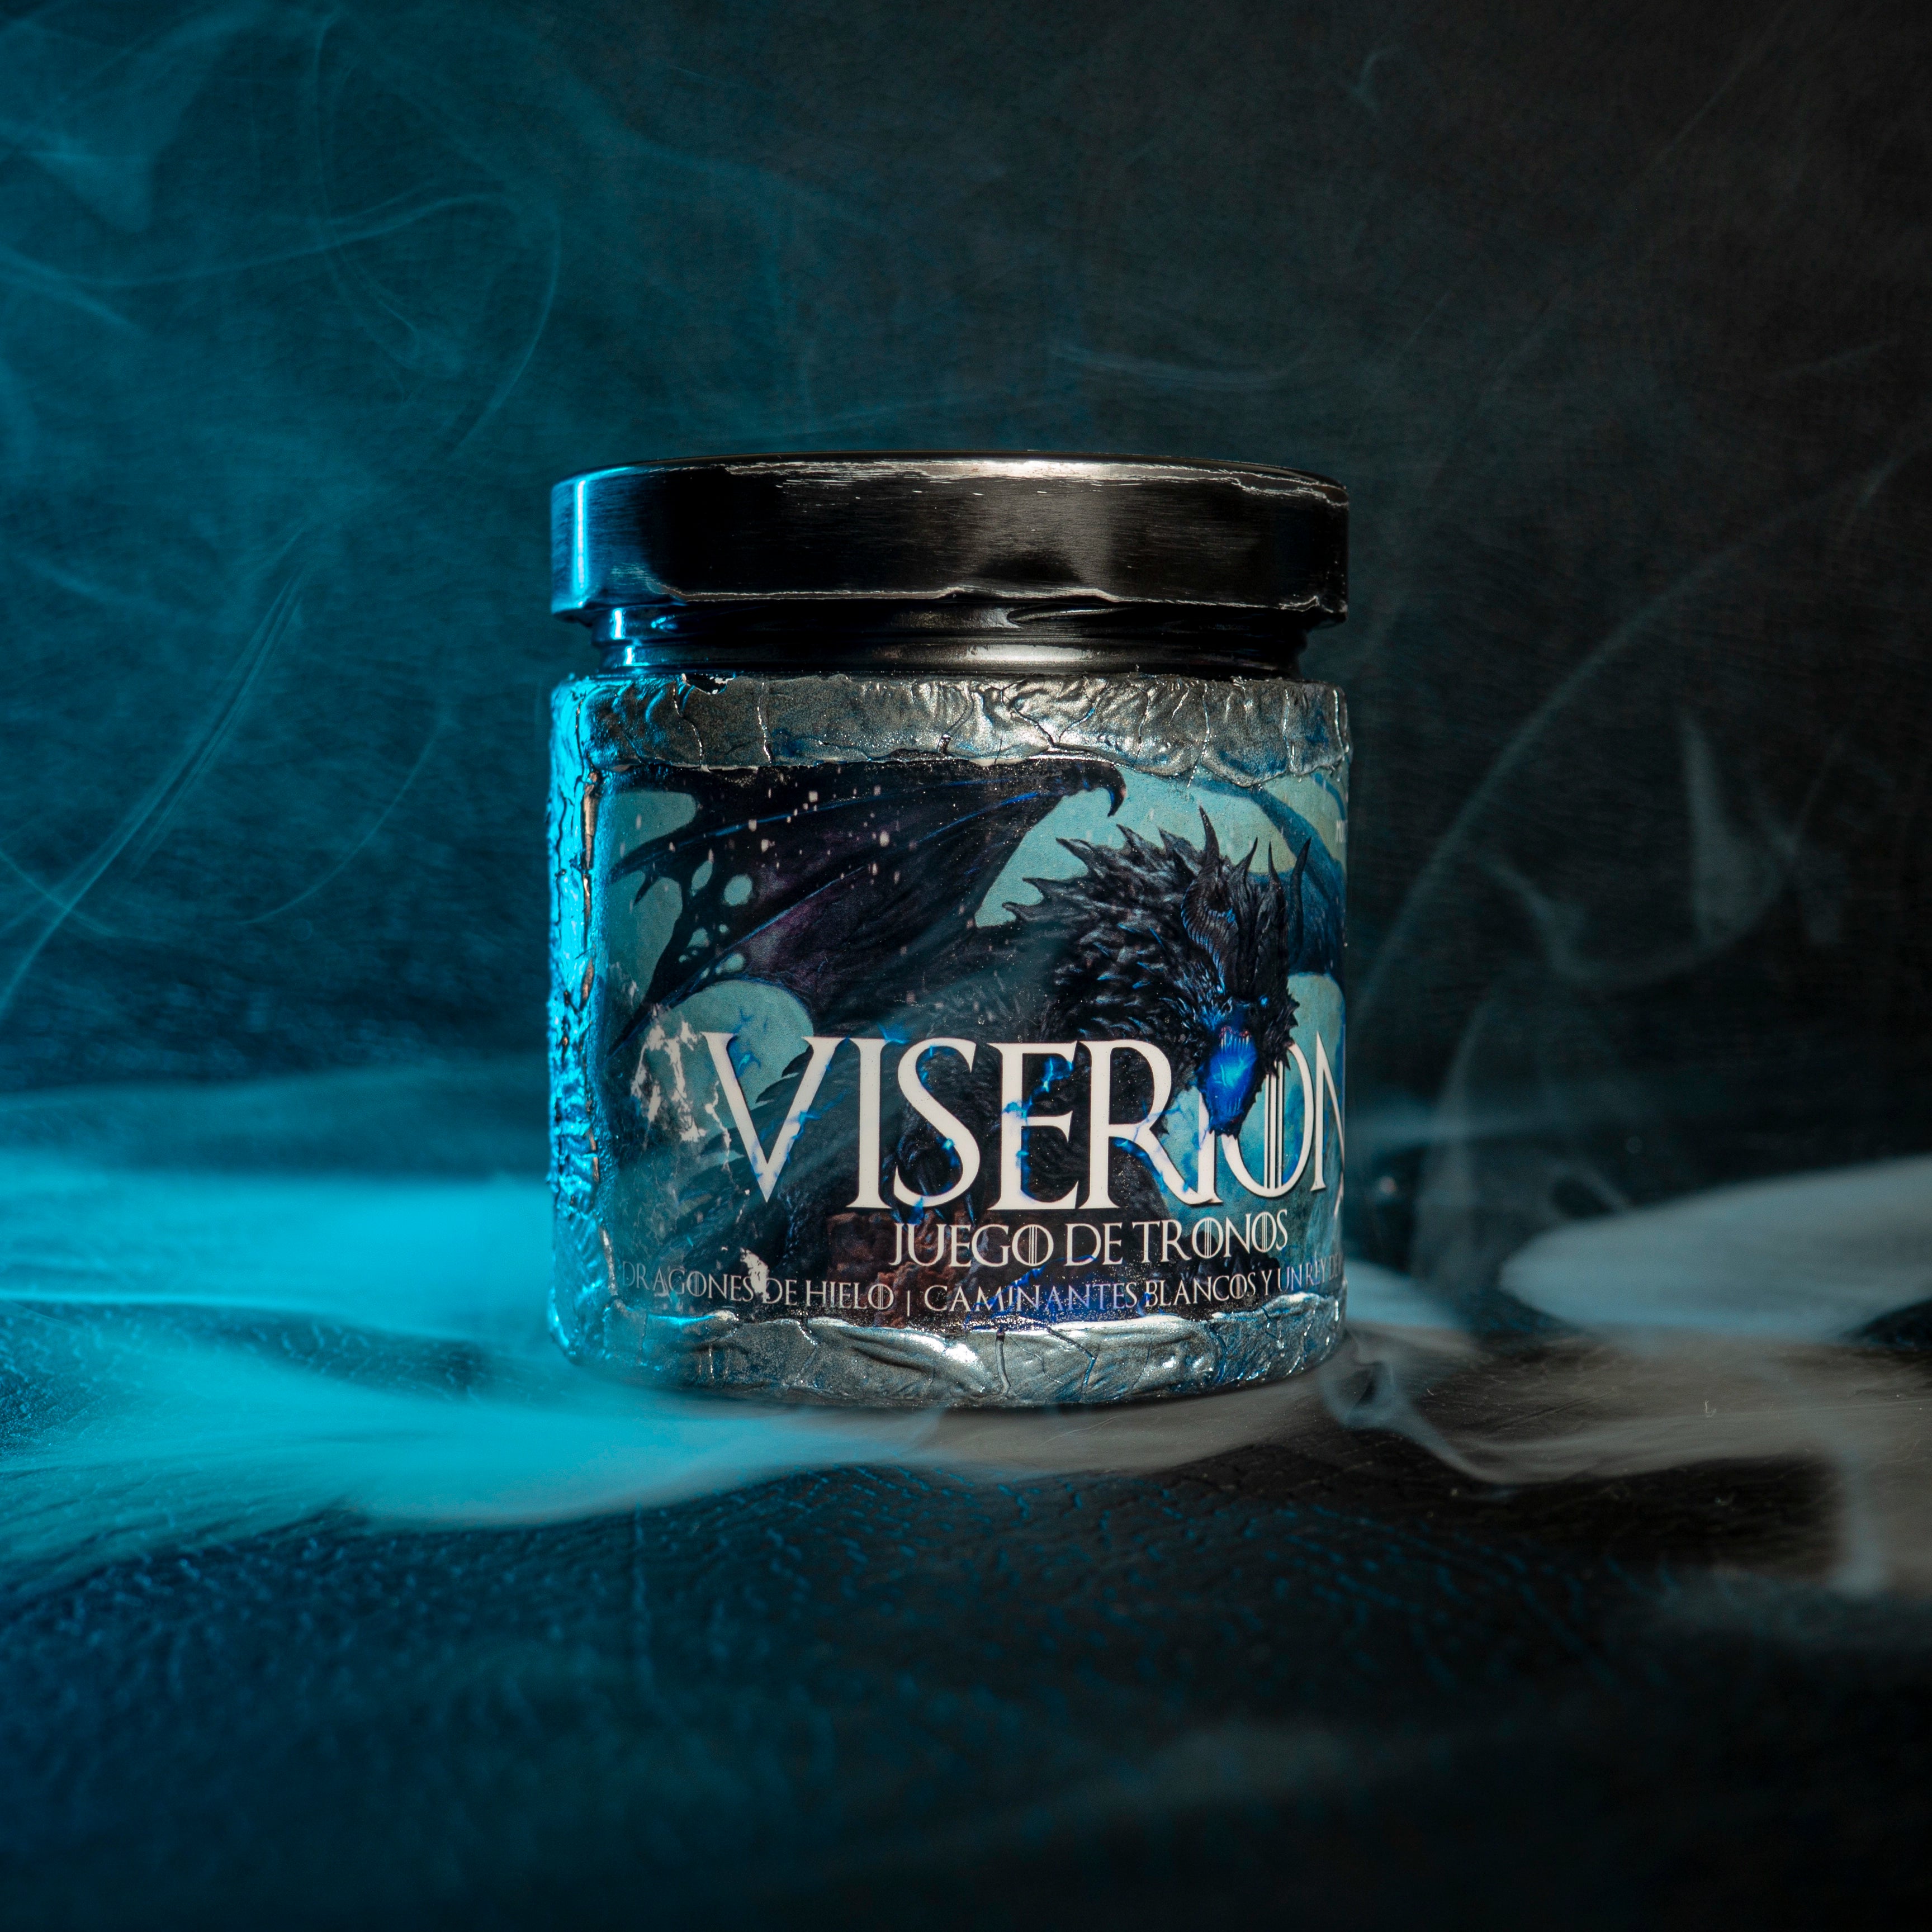 Vela "Viserion" Juego de Tronos / Game of Thrones - Monsters Candles ® - Velas Literarias artesanas de soja 100% ecológica